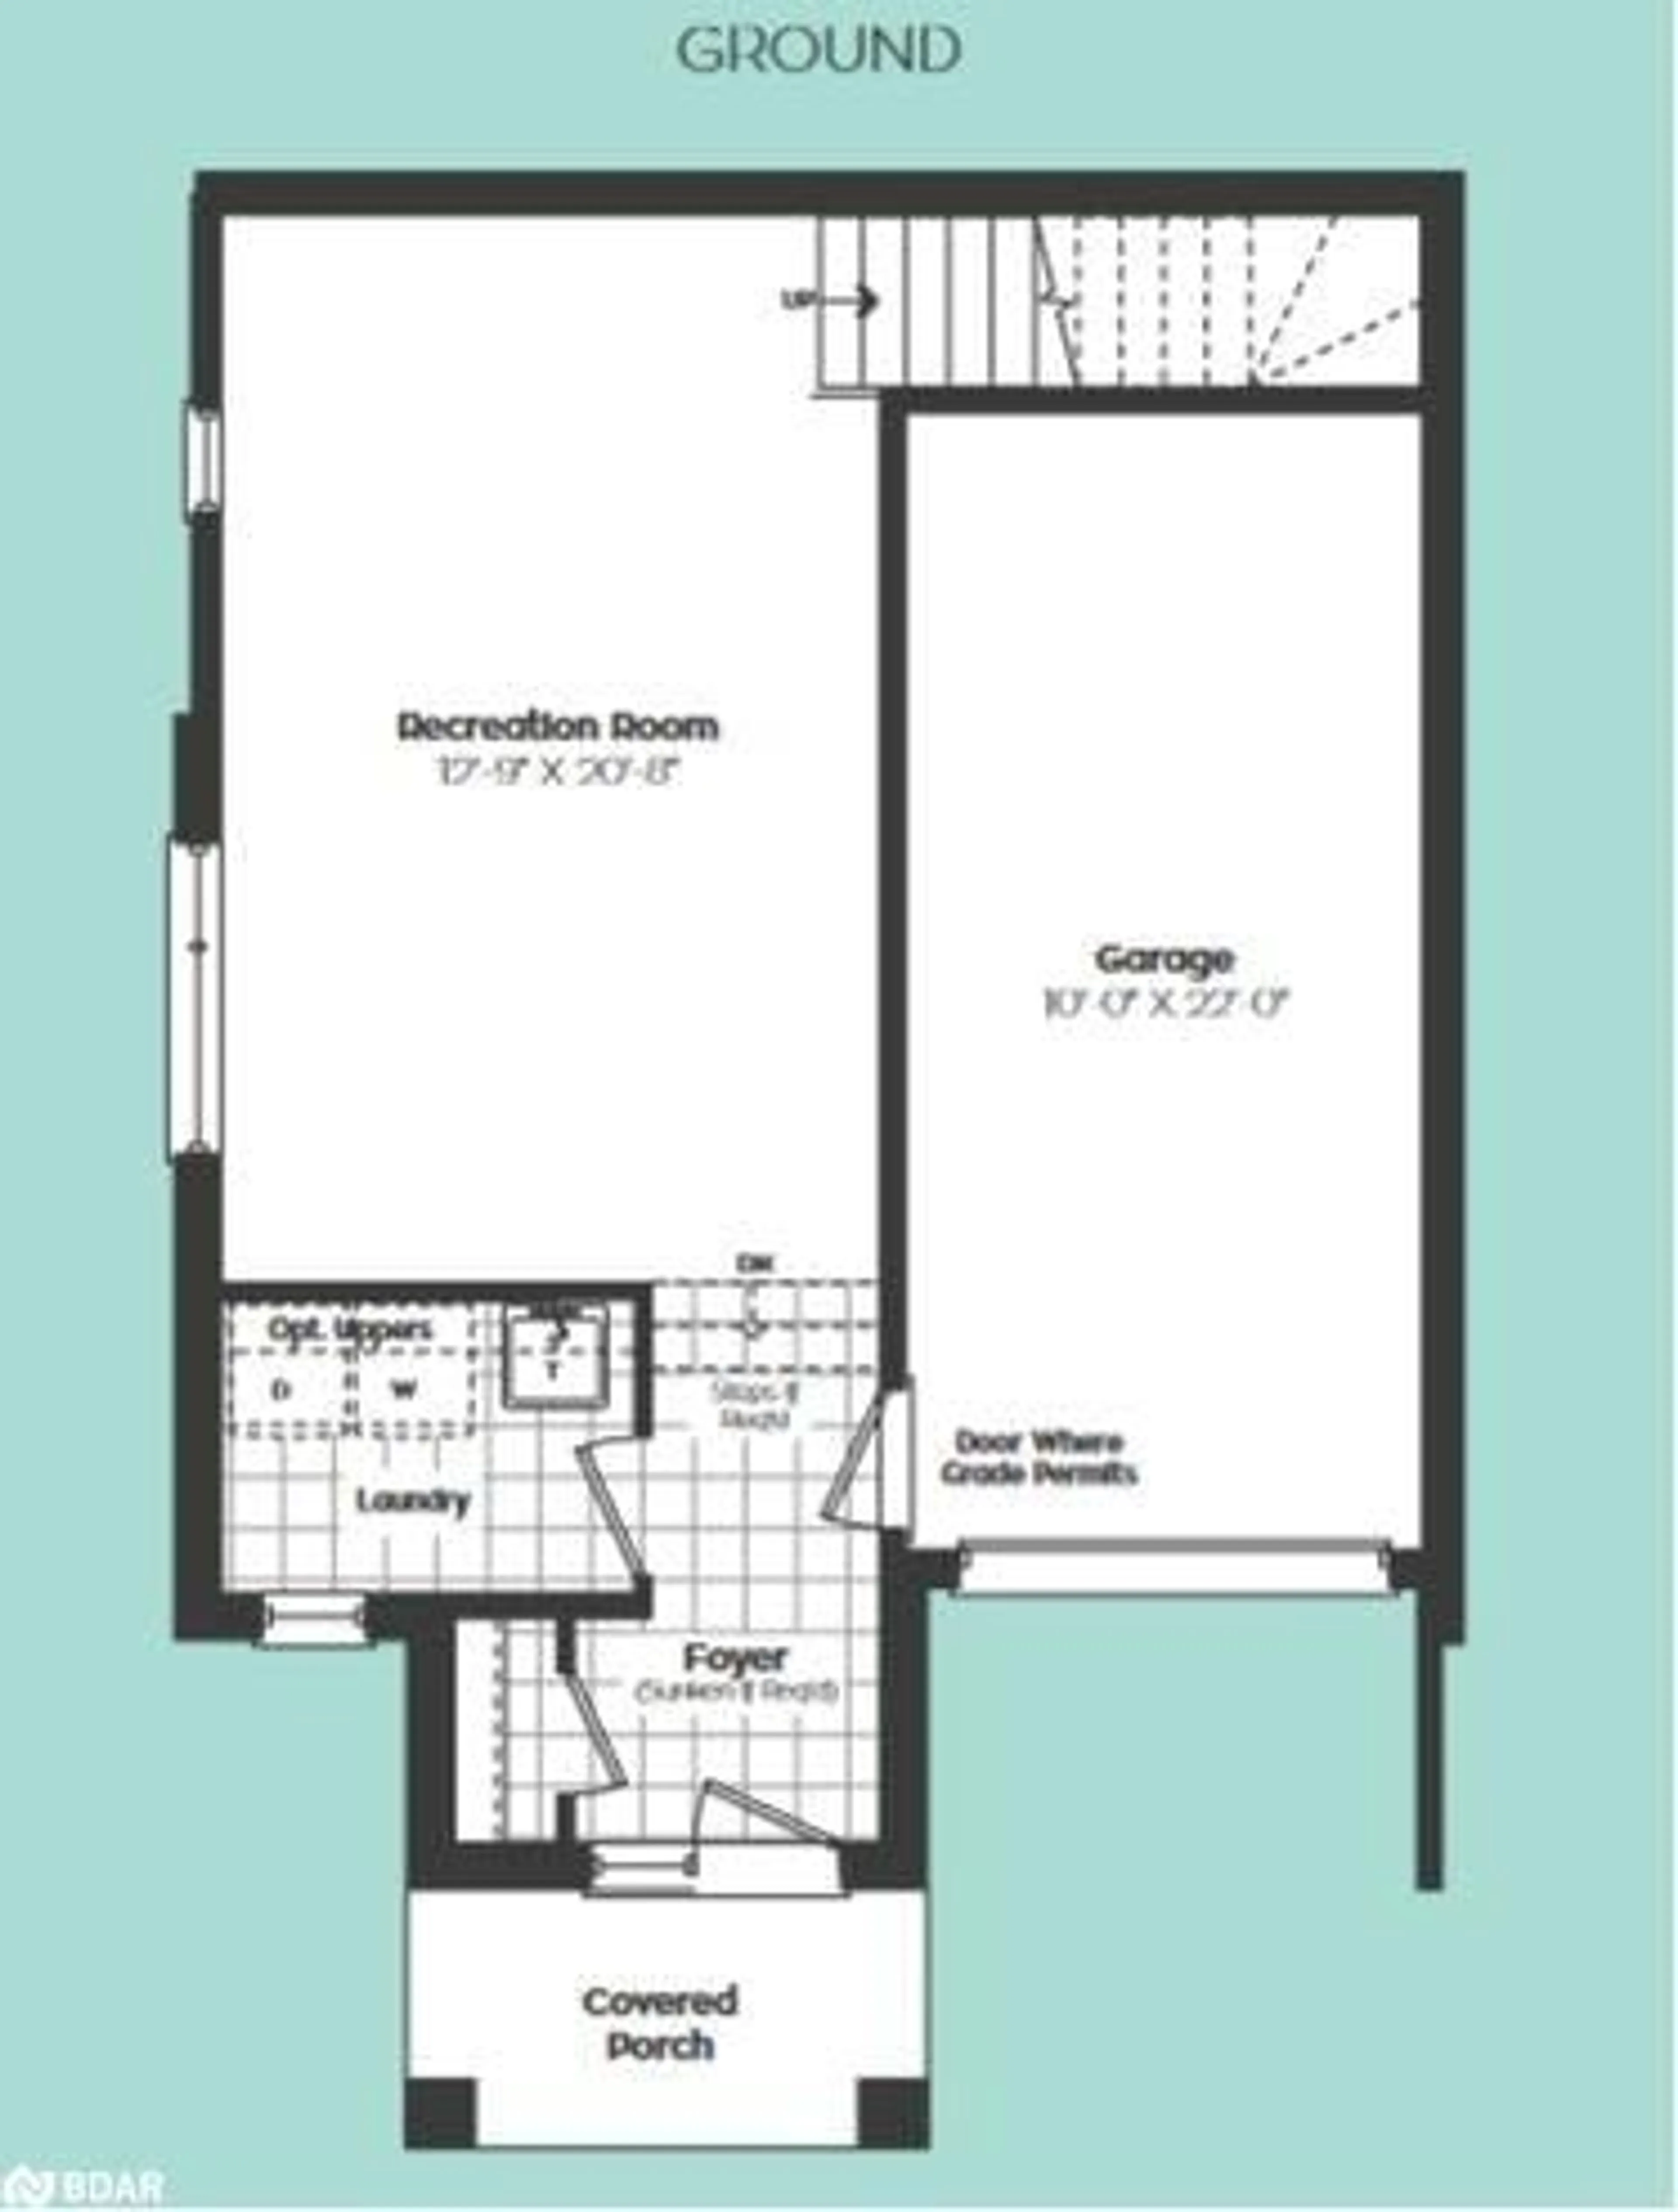 Floor plan for 23 Wyn Wood Lane, Orillia Ontario L3V 3P6